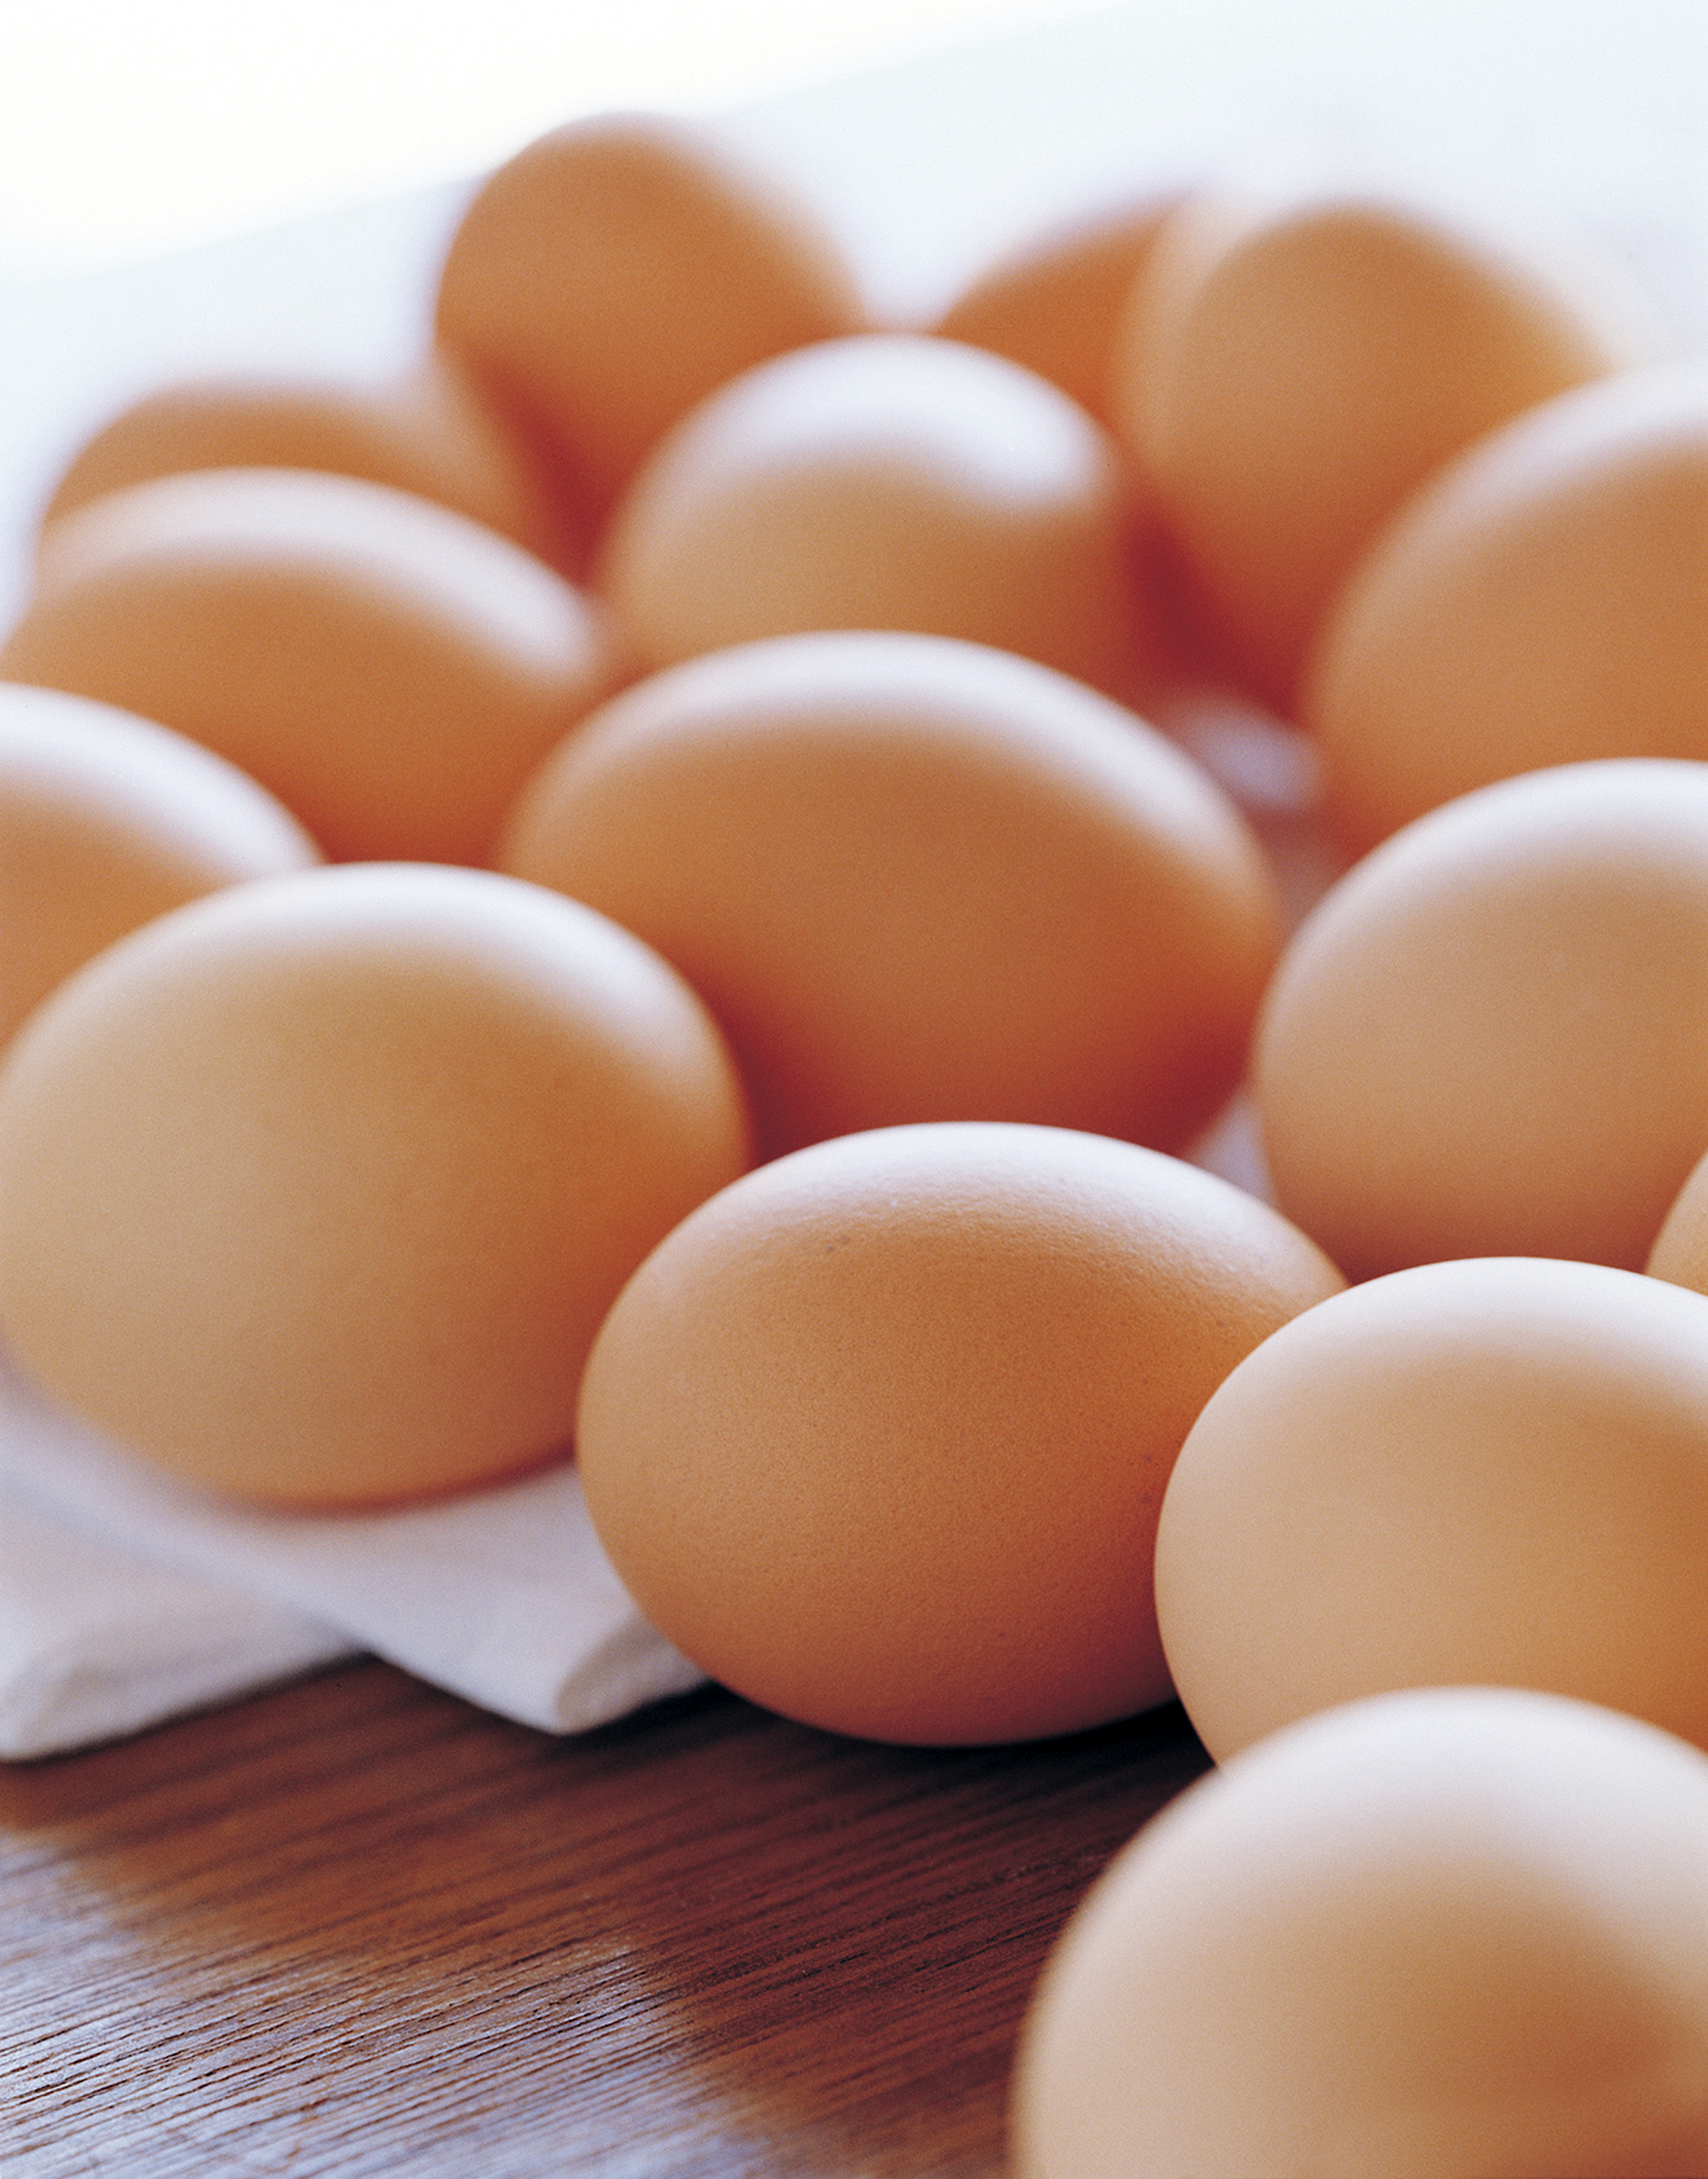 肺腺癌患者應選擇營養豐富、易消化吸收的食物如蛋類。